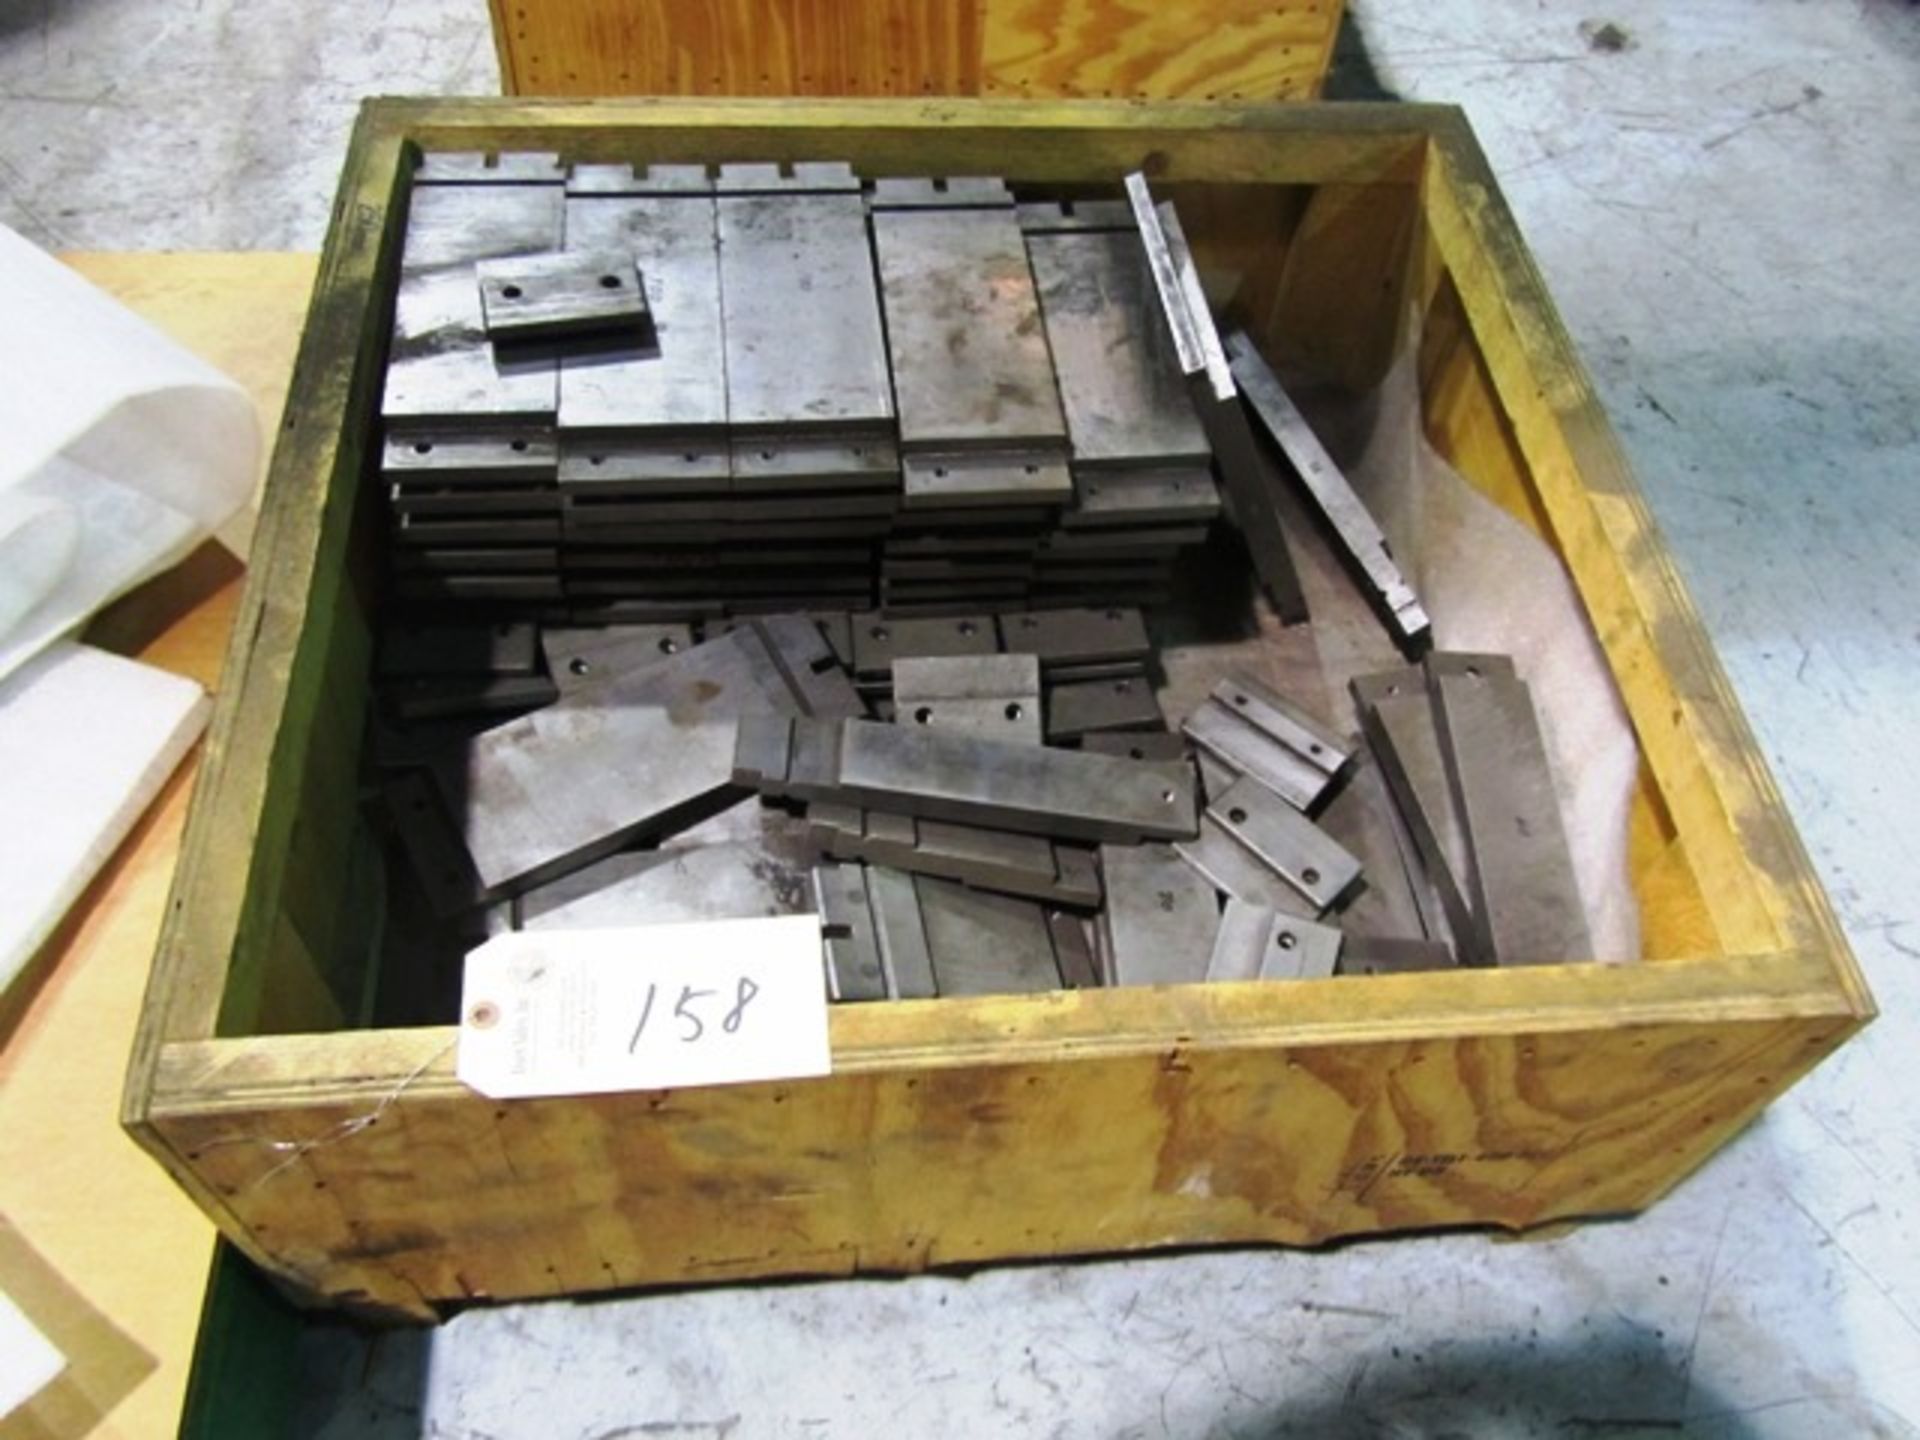 Crate of Dies (for hammerle press brakes)